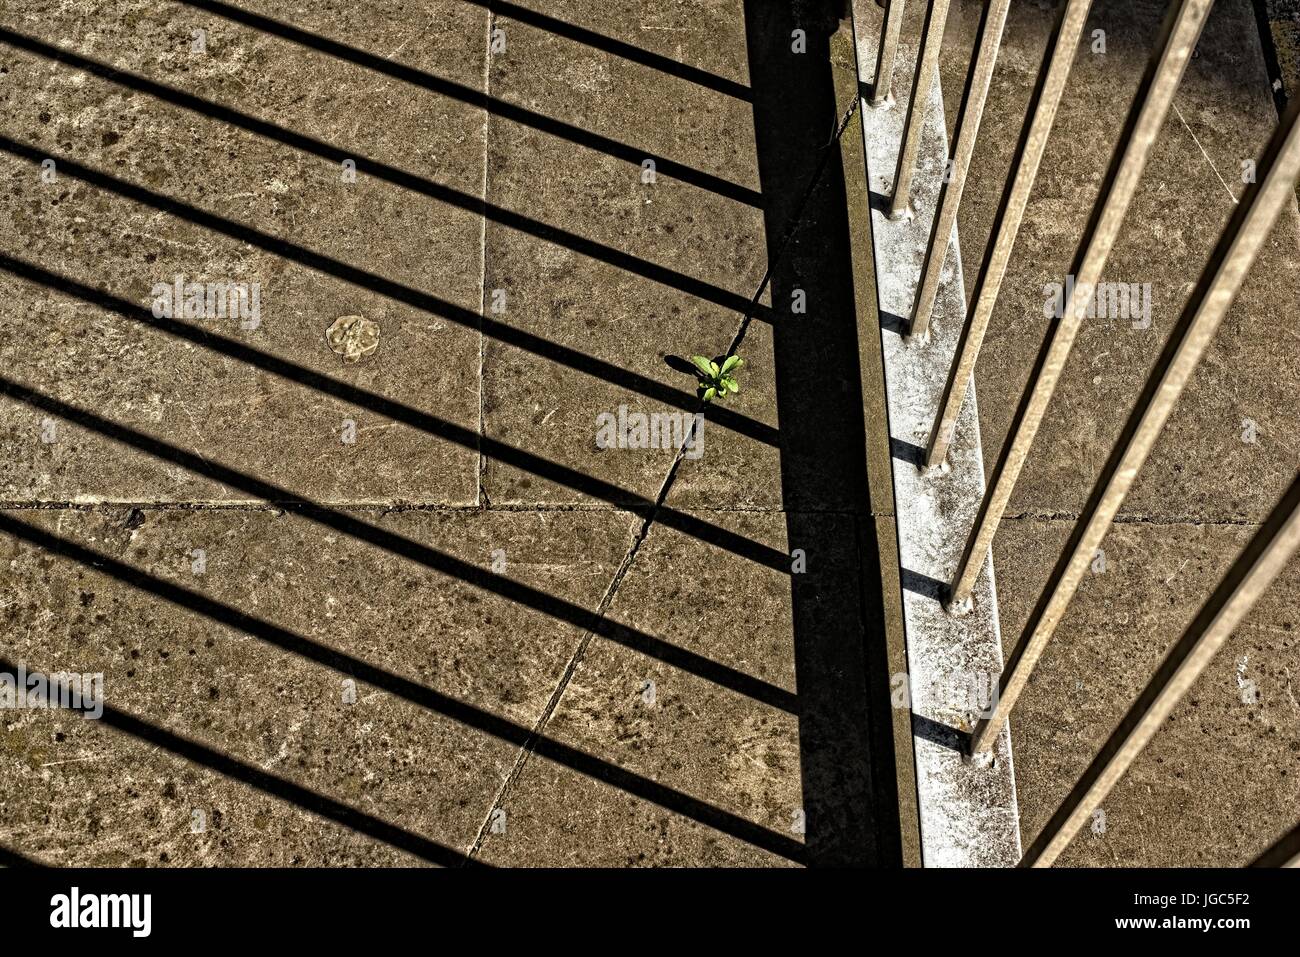 Abstraktes Bild des Pflanzenwachstums auf kargen Pflasterplatten, ein einsamer Überlebender gegen den Beton Stockfoto